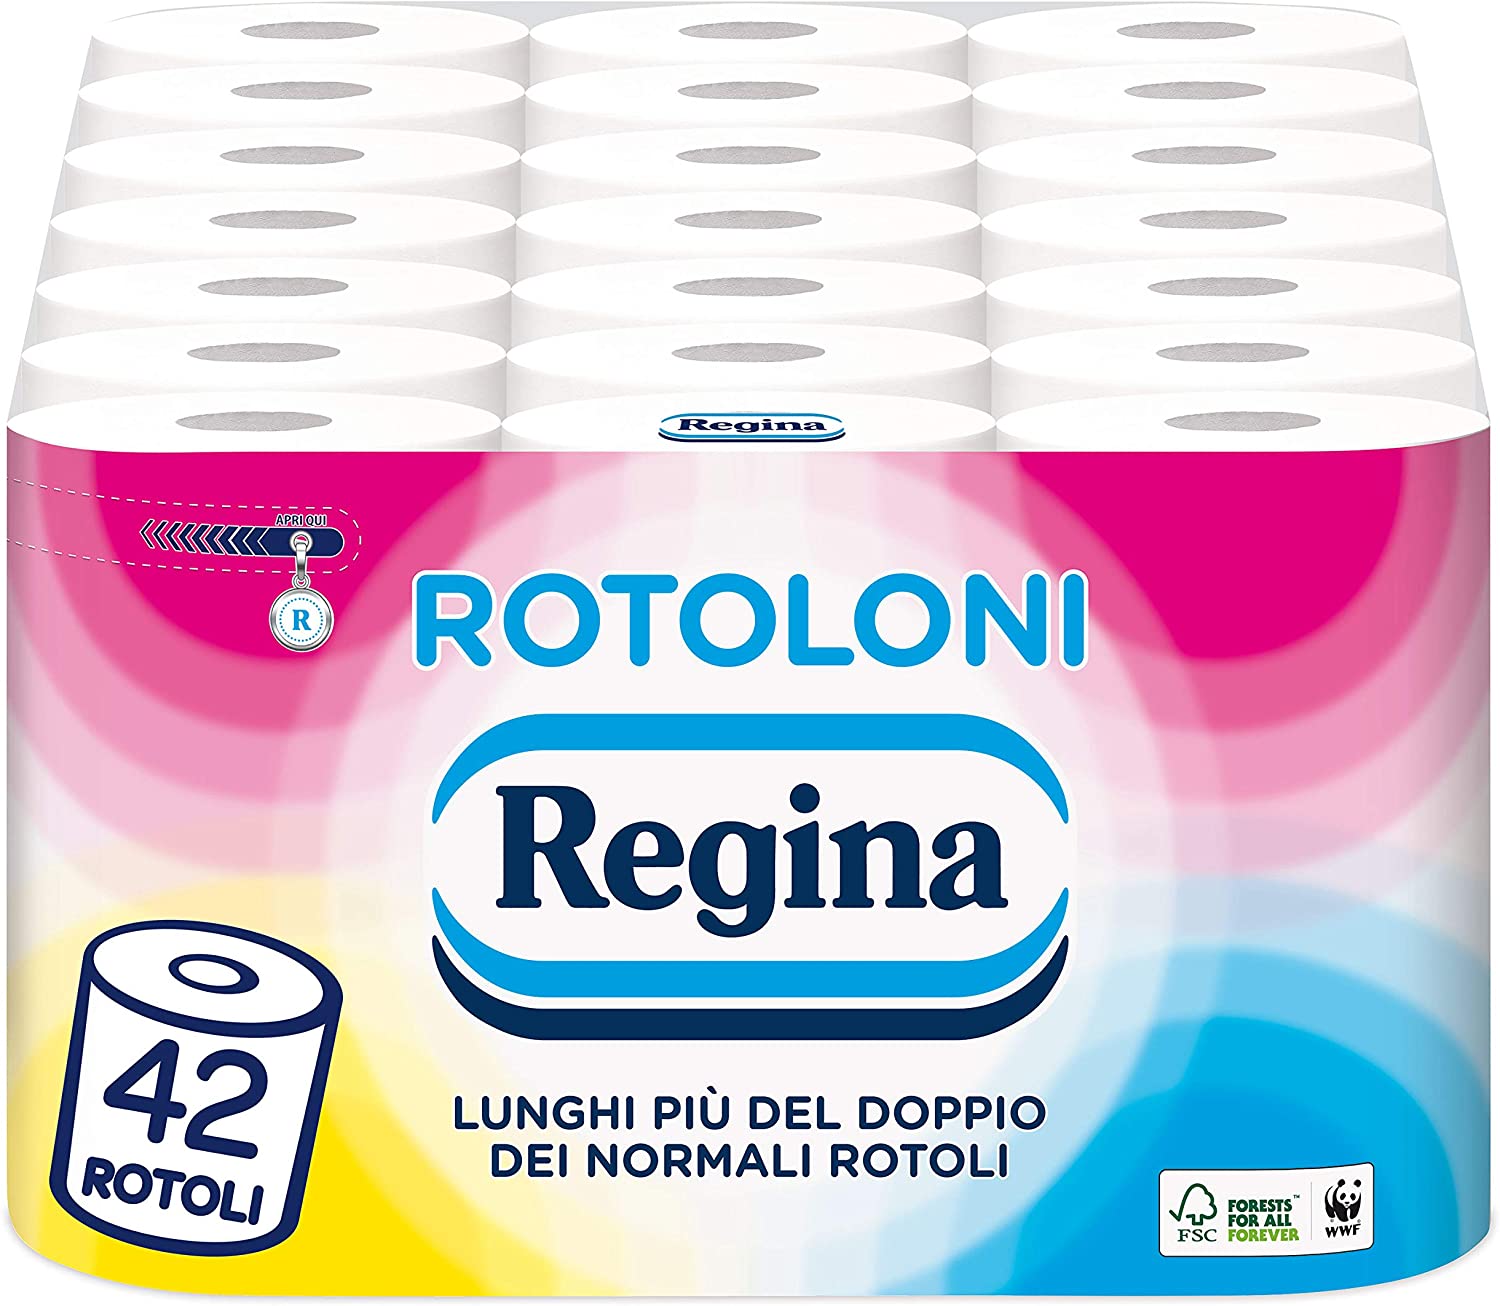 Rotoloni Regina - Carta Igienica, 500 strappi per rotolo, Carta 100% certificata FSC, confezione da 42 rotoli